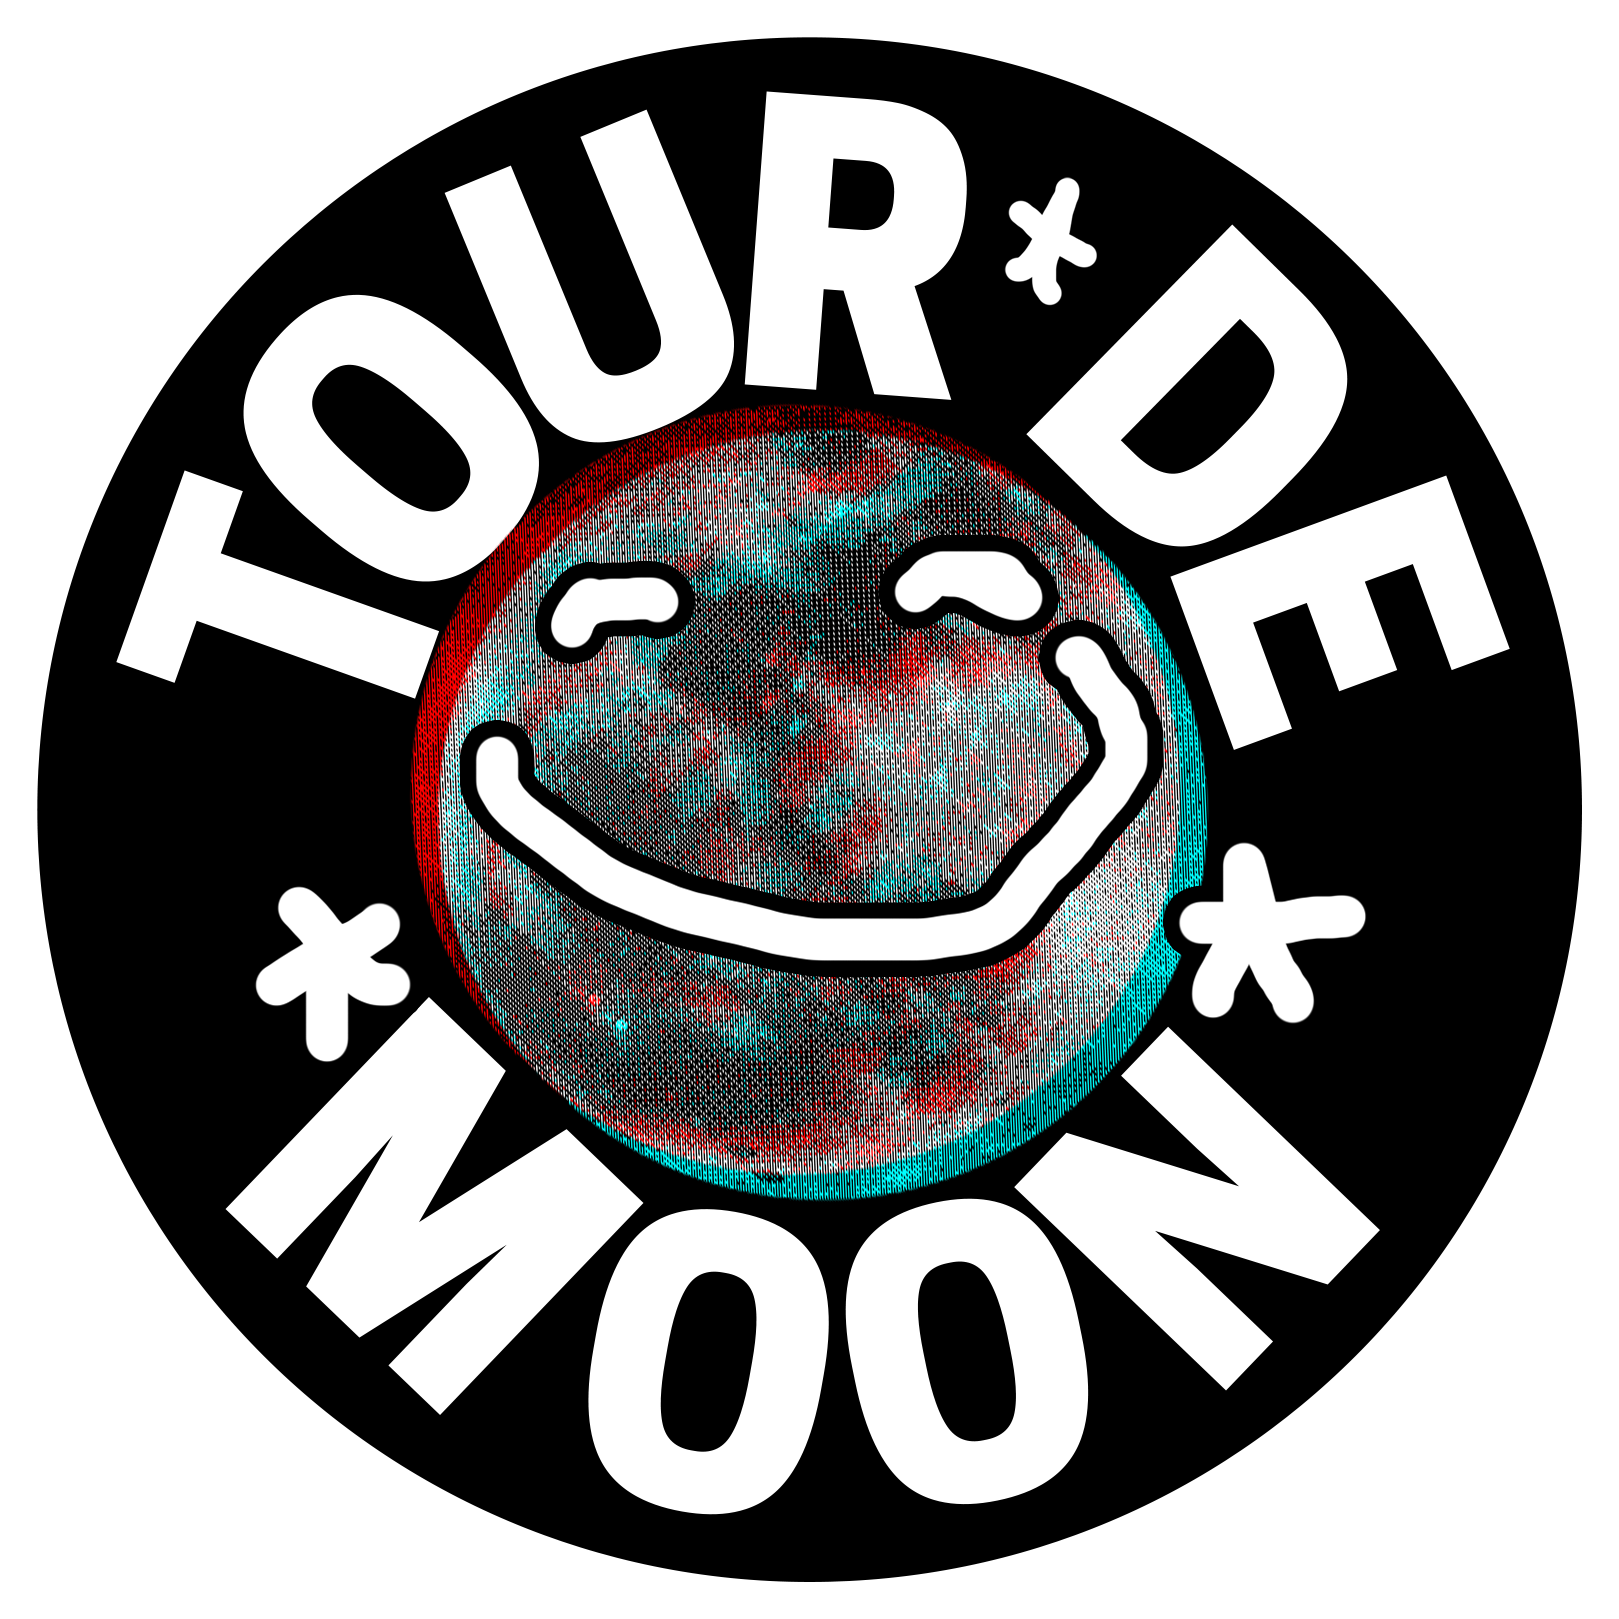 Tour de Moon Logo 1